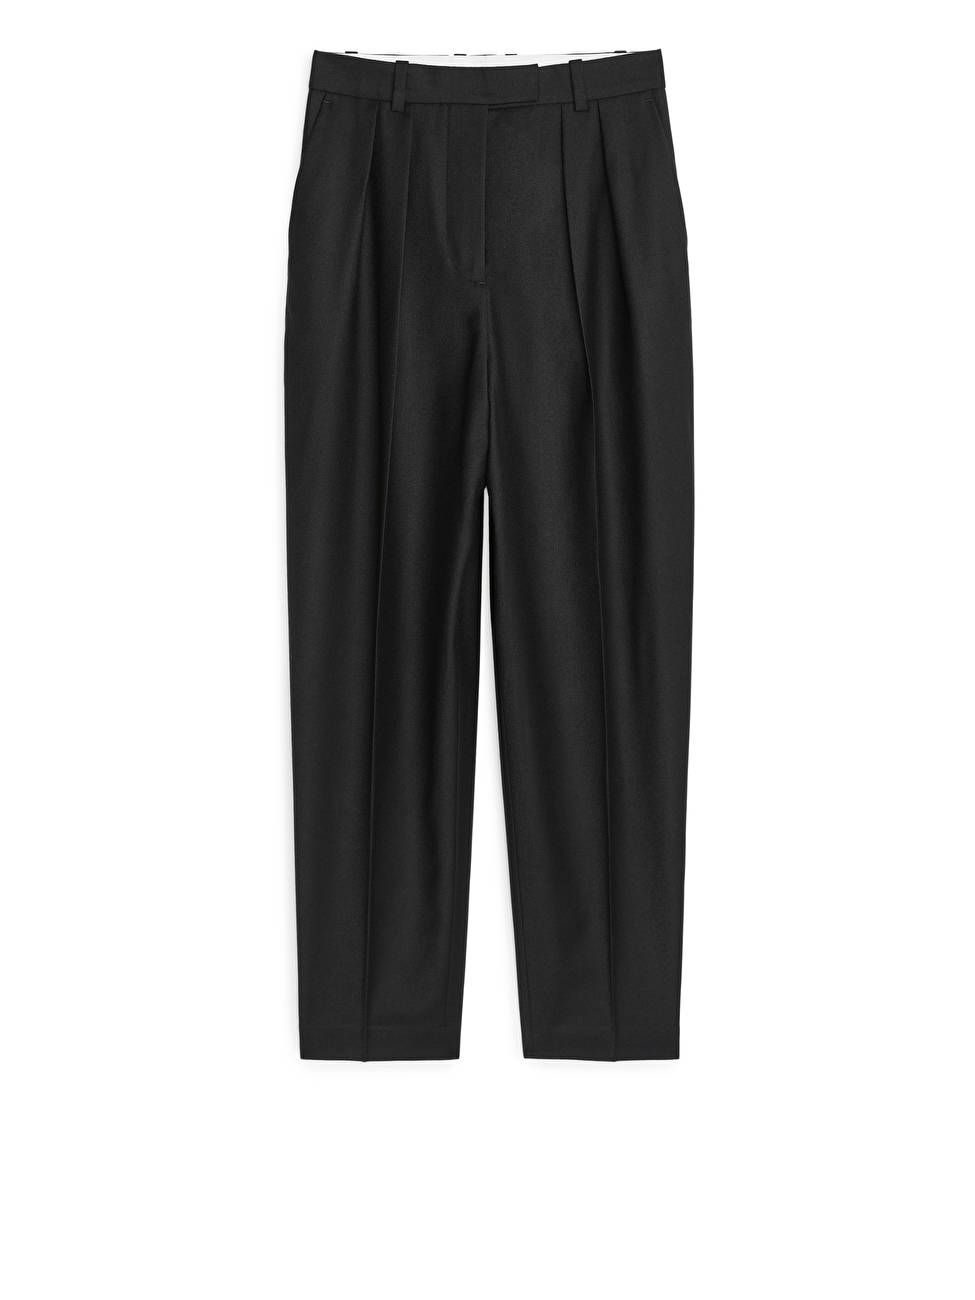 Wool Flannel Trousers
            
           	£115 | ARKET